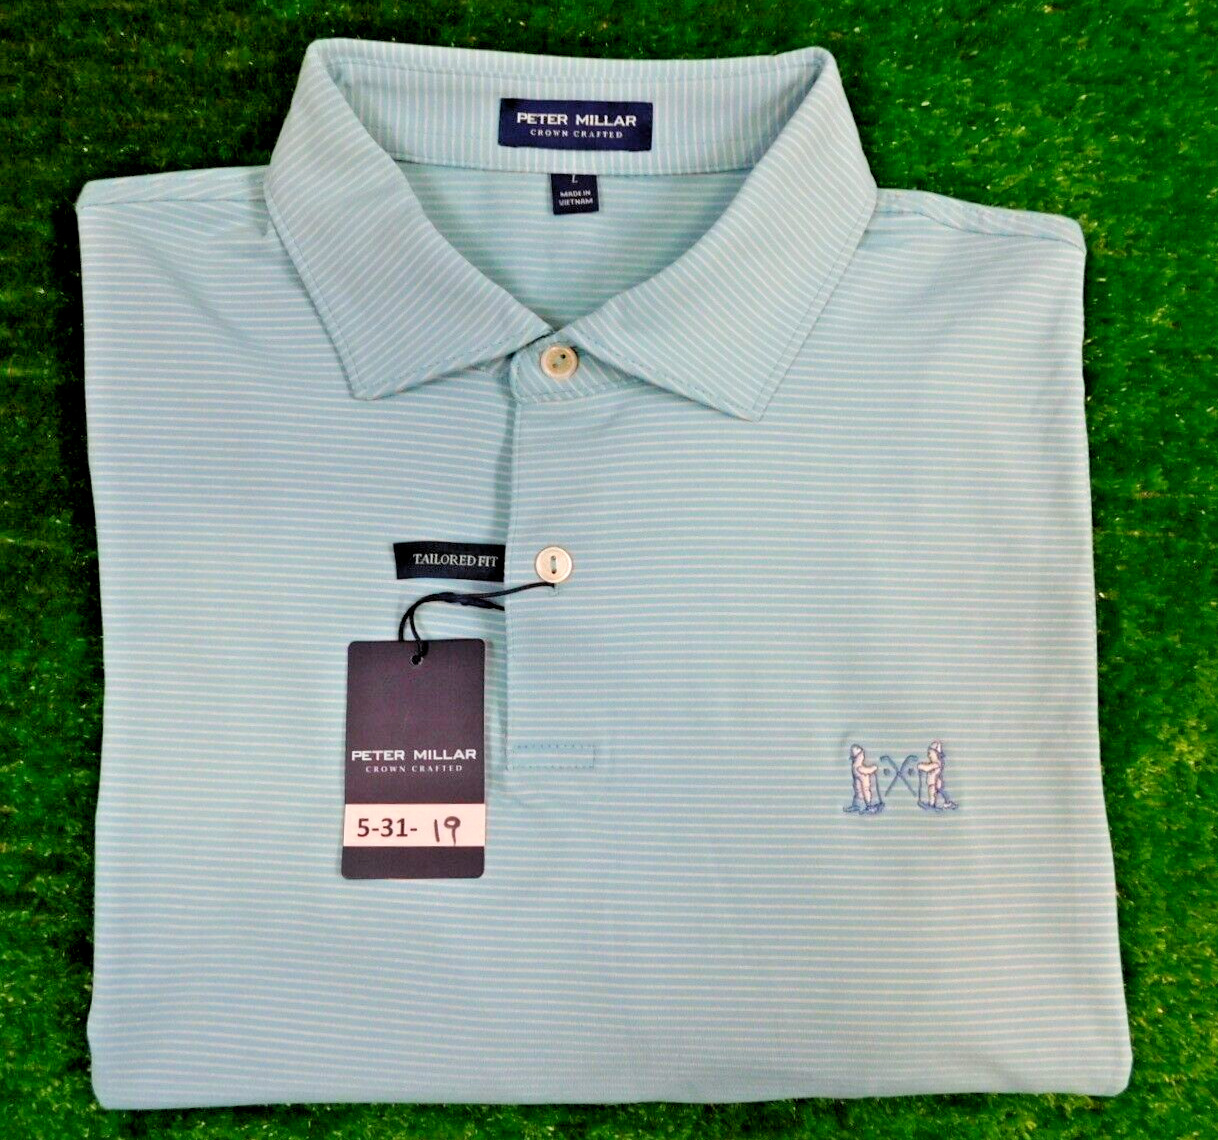 Peter Millar Men\'s Tailored Fit Stripe Golf Shirt w/NGLA Logo Large Green/White